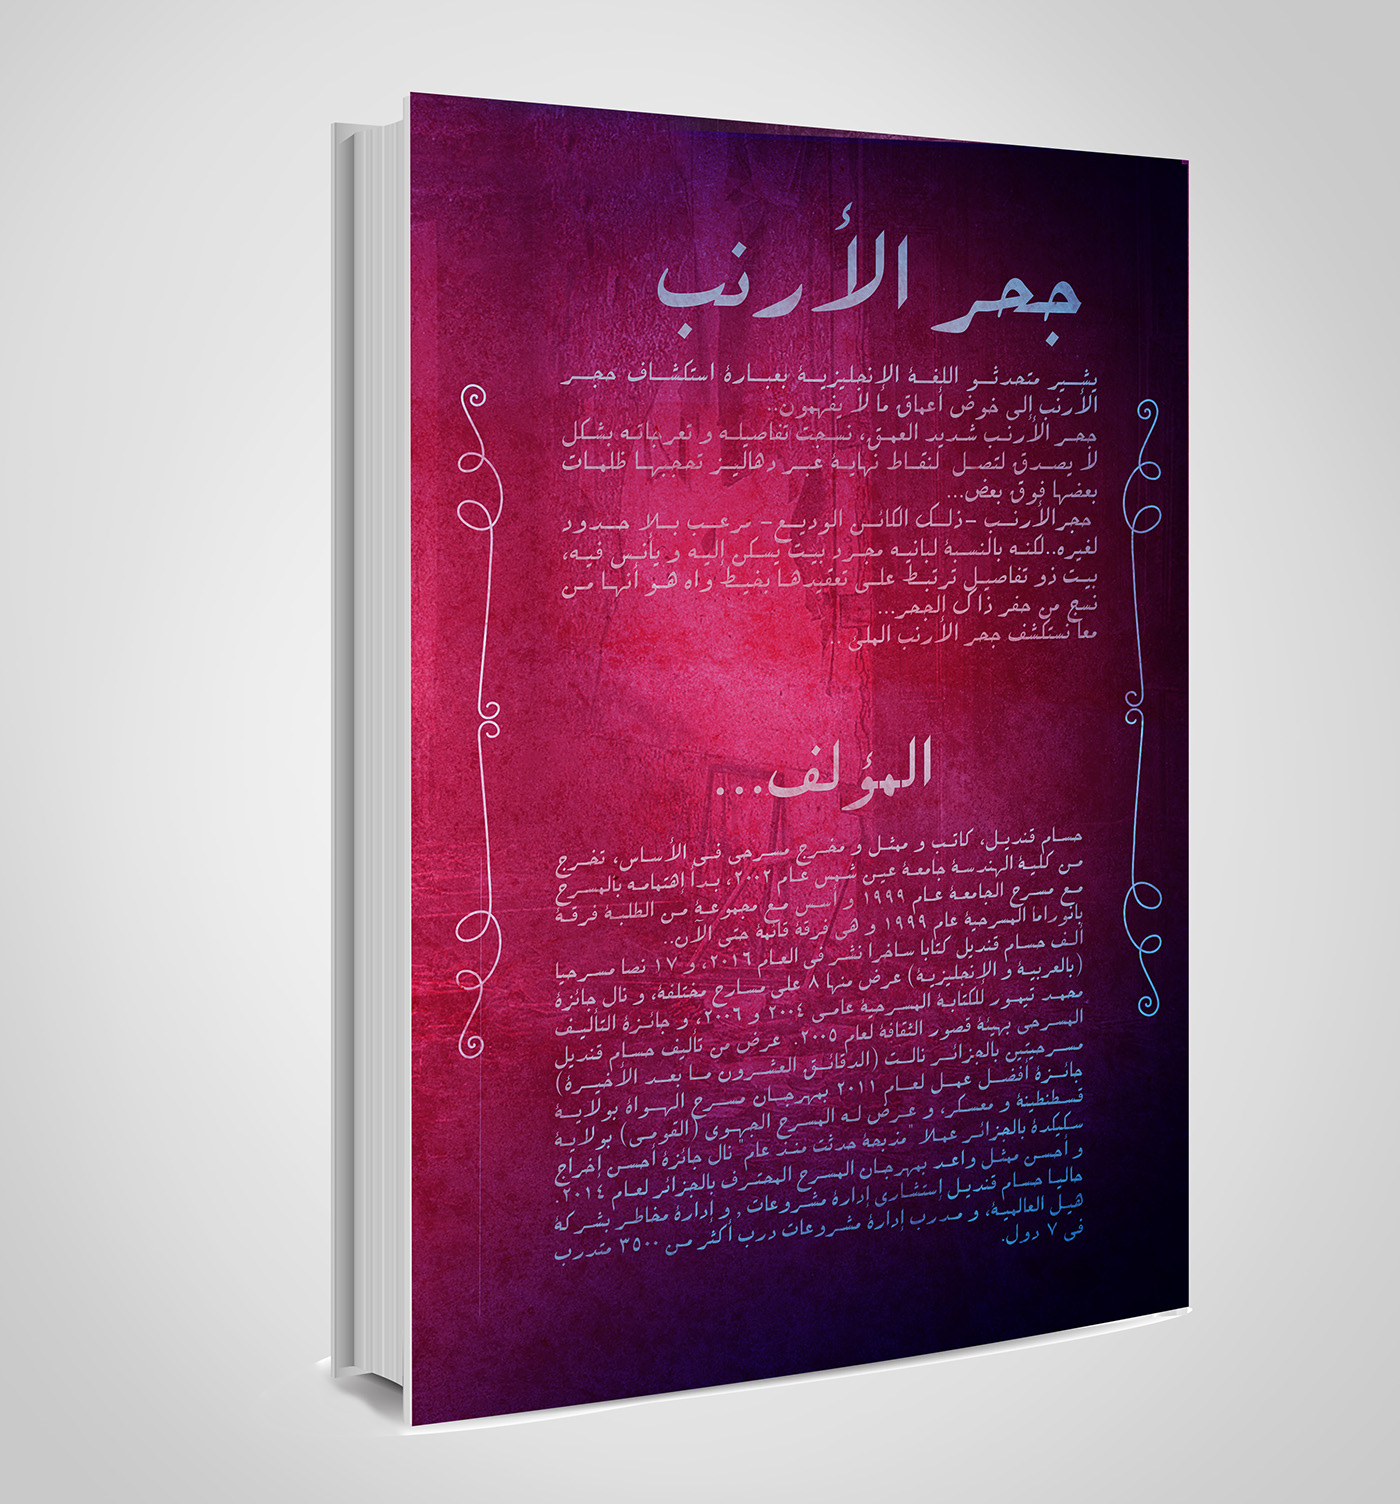 #Design #book #cover   #bookcover